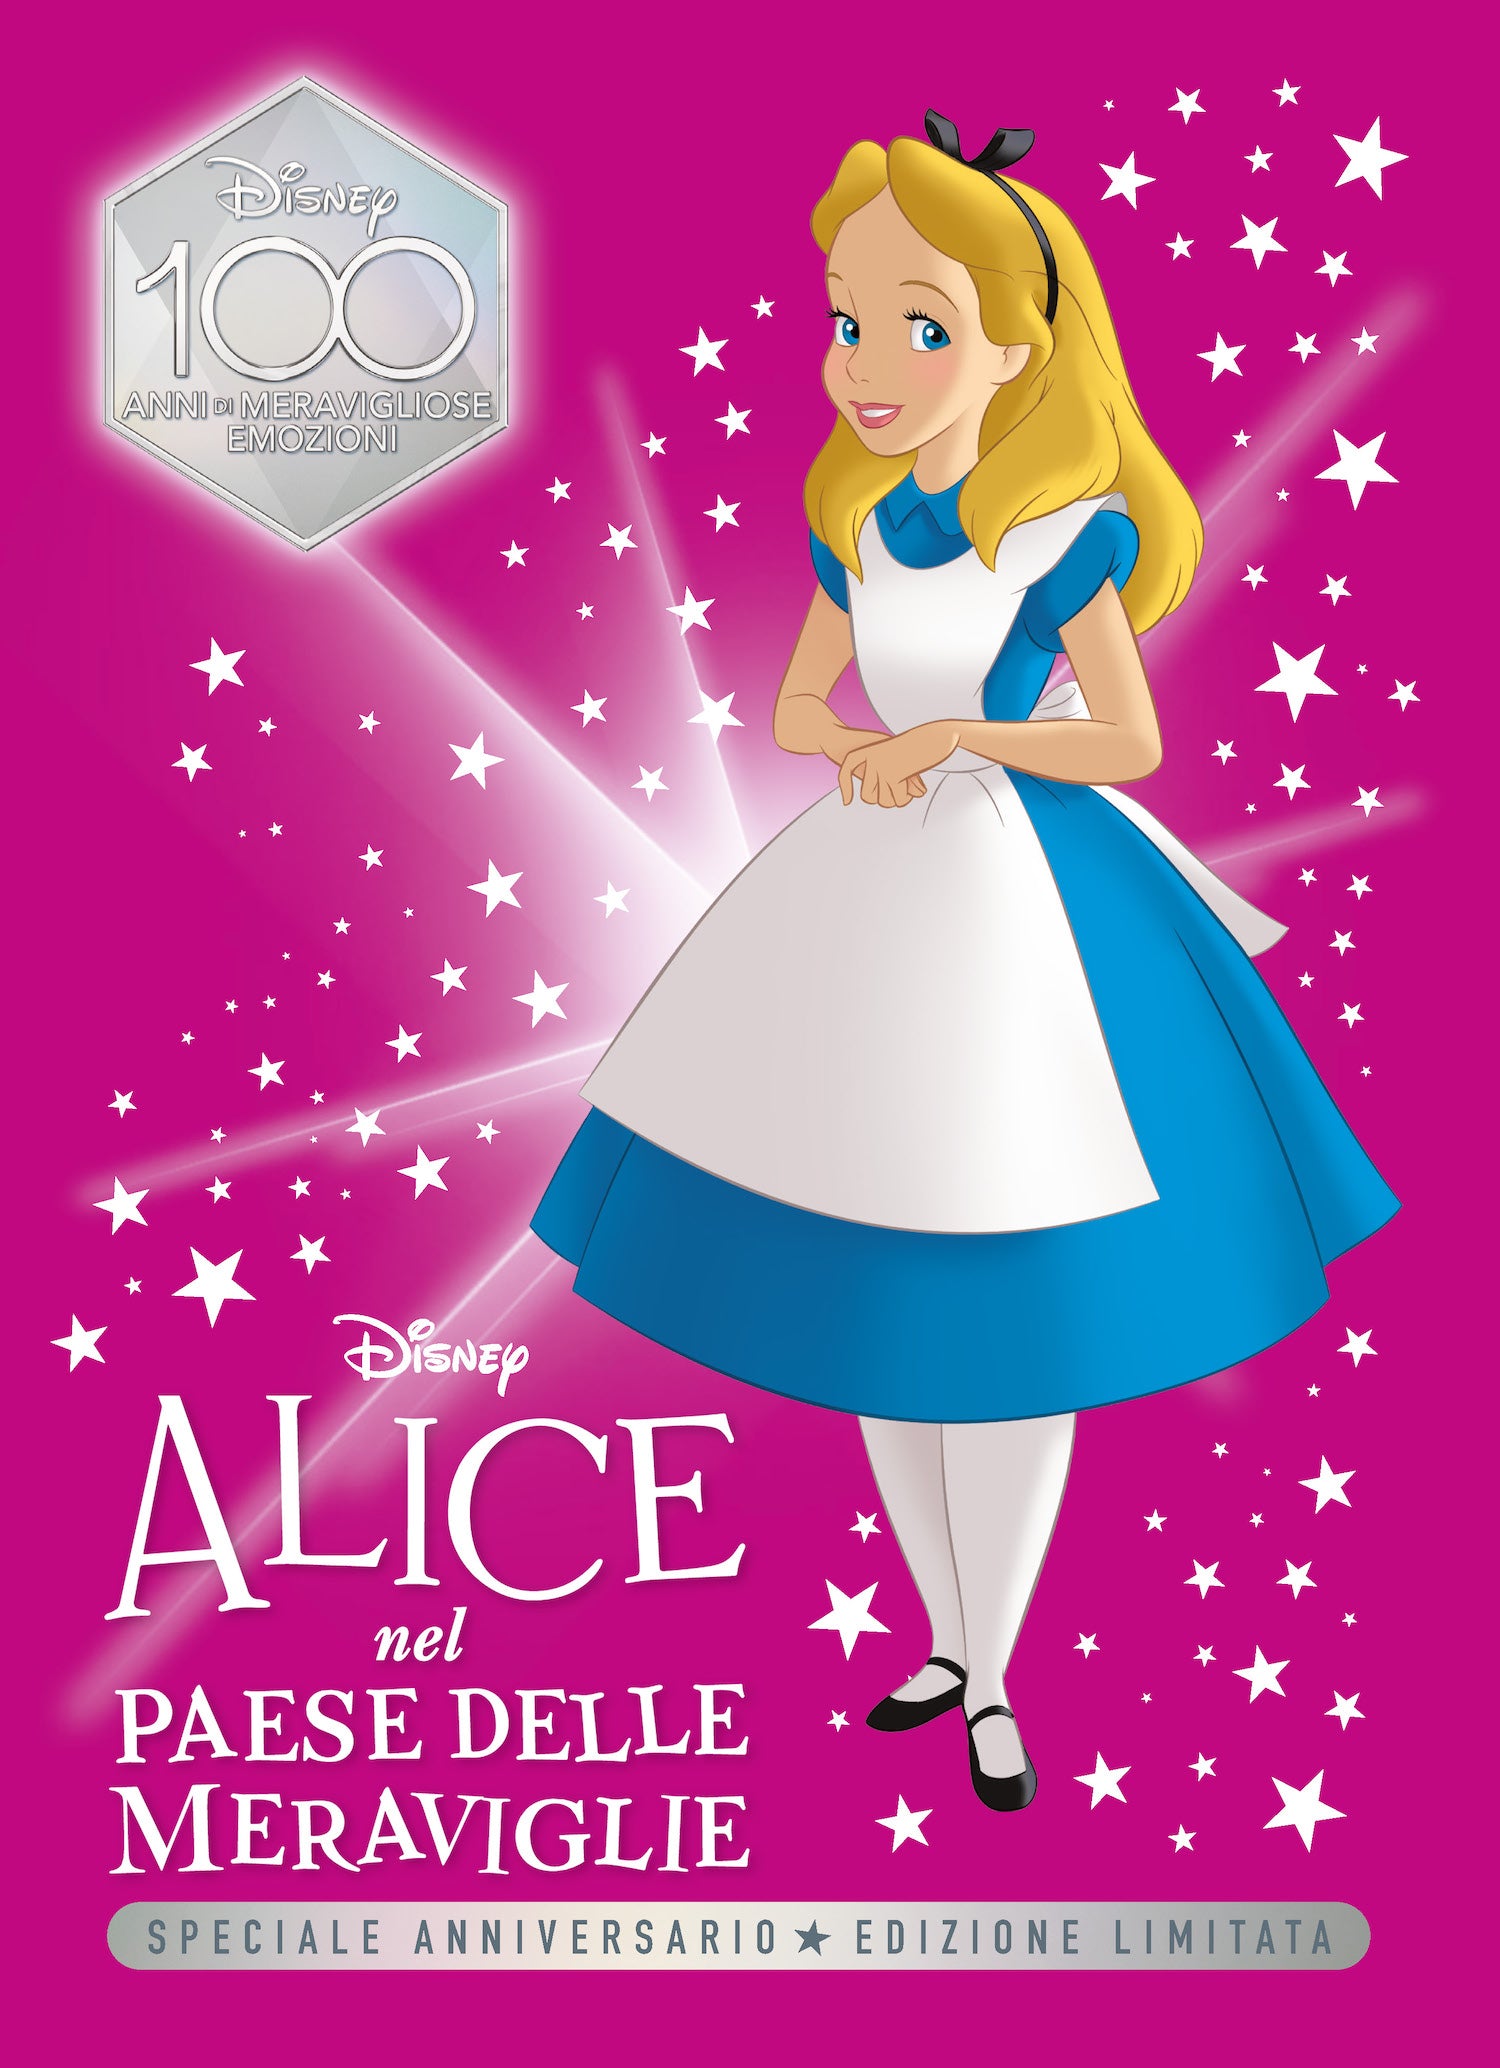 Alice nel Paese delle meraviglie Speciale Anniversario Edizione limitata.  Disney 100 Anni di meravigliose emozioni: libro di Walt Disney